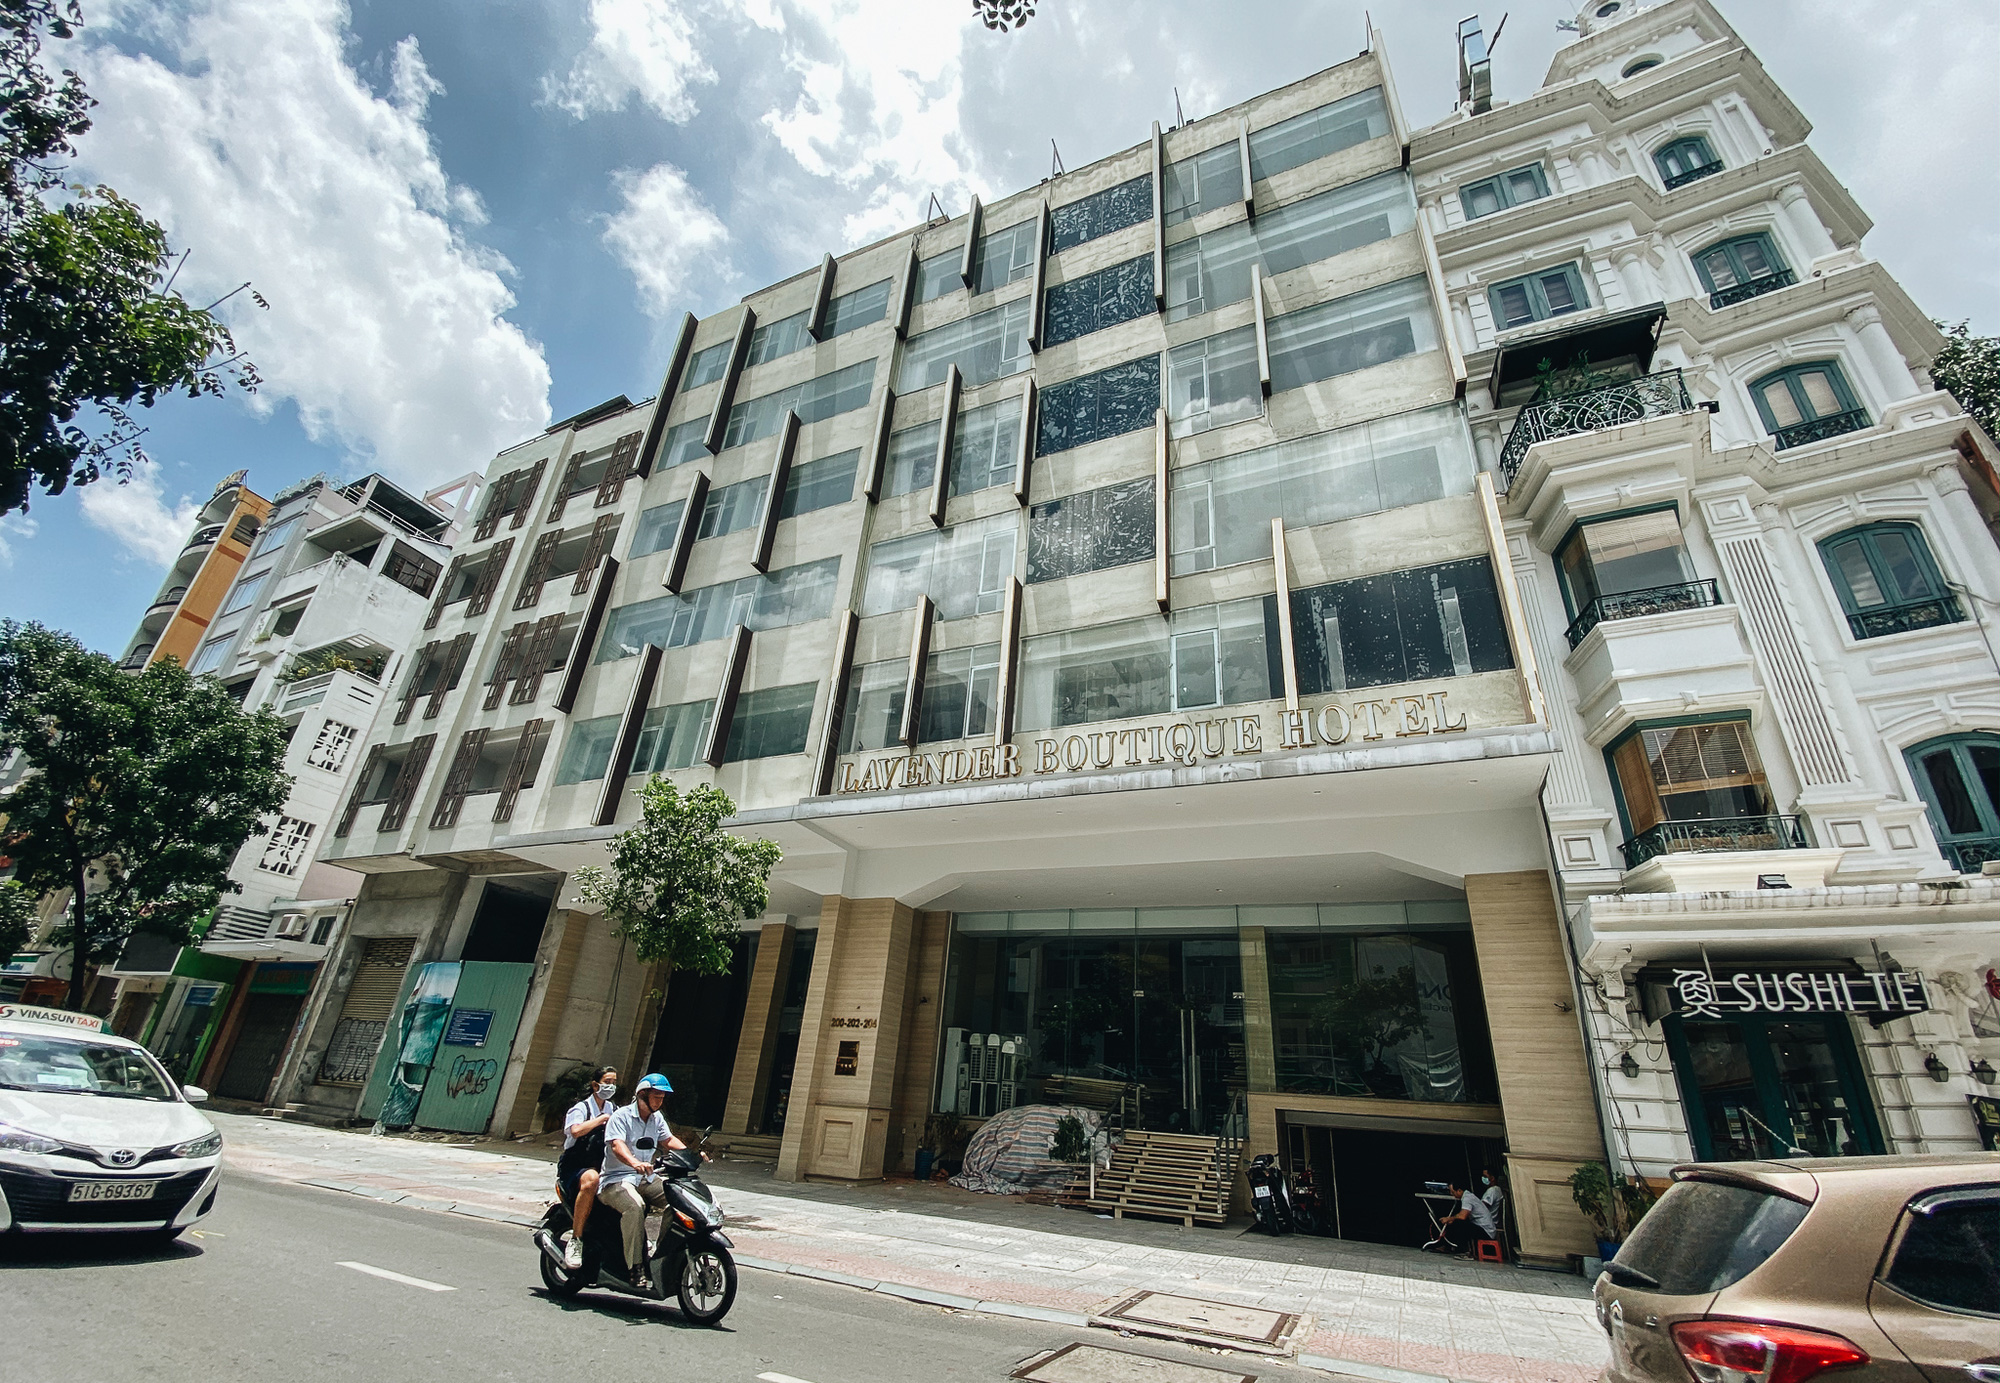  Chùm ảnh: Khách sạn ở trung tâm Sài Gòn ngừng hoạt động, rao bán vì ngấm đòn Covid-19 - Ảnh 6.